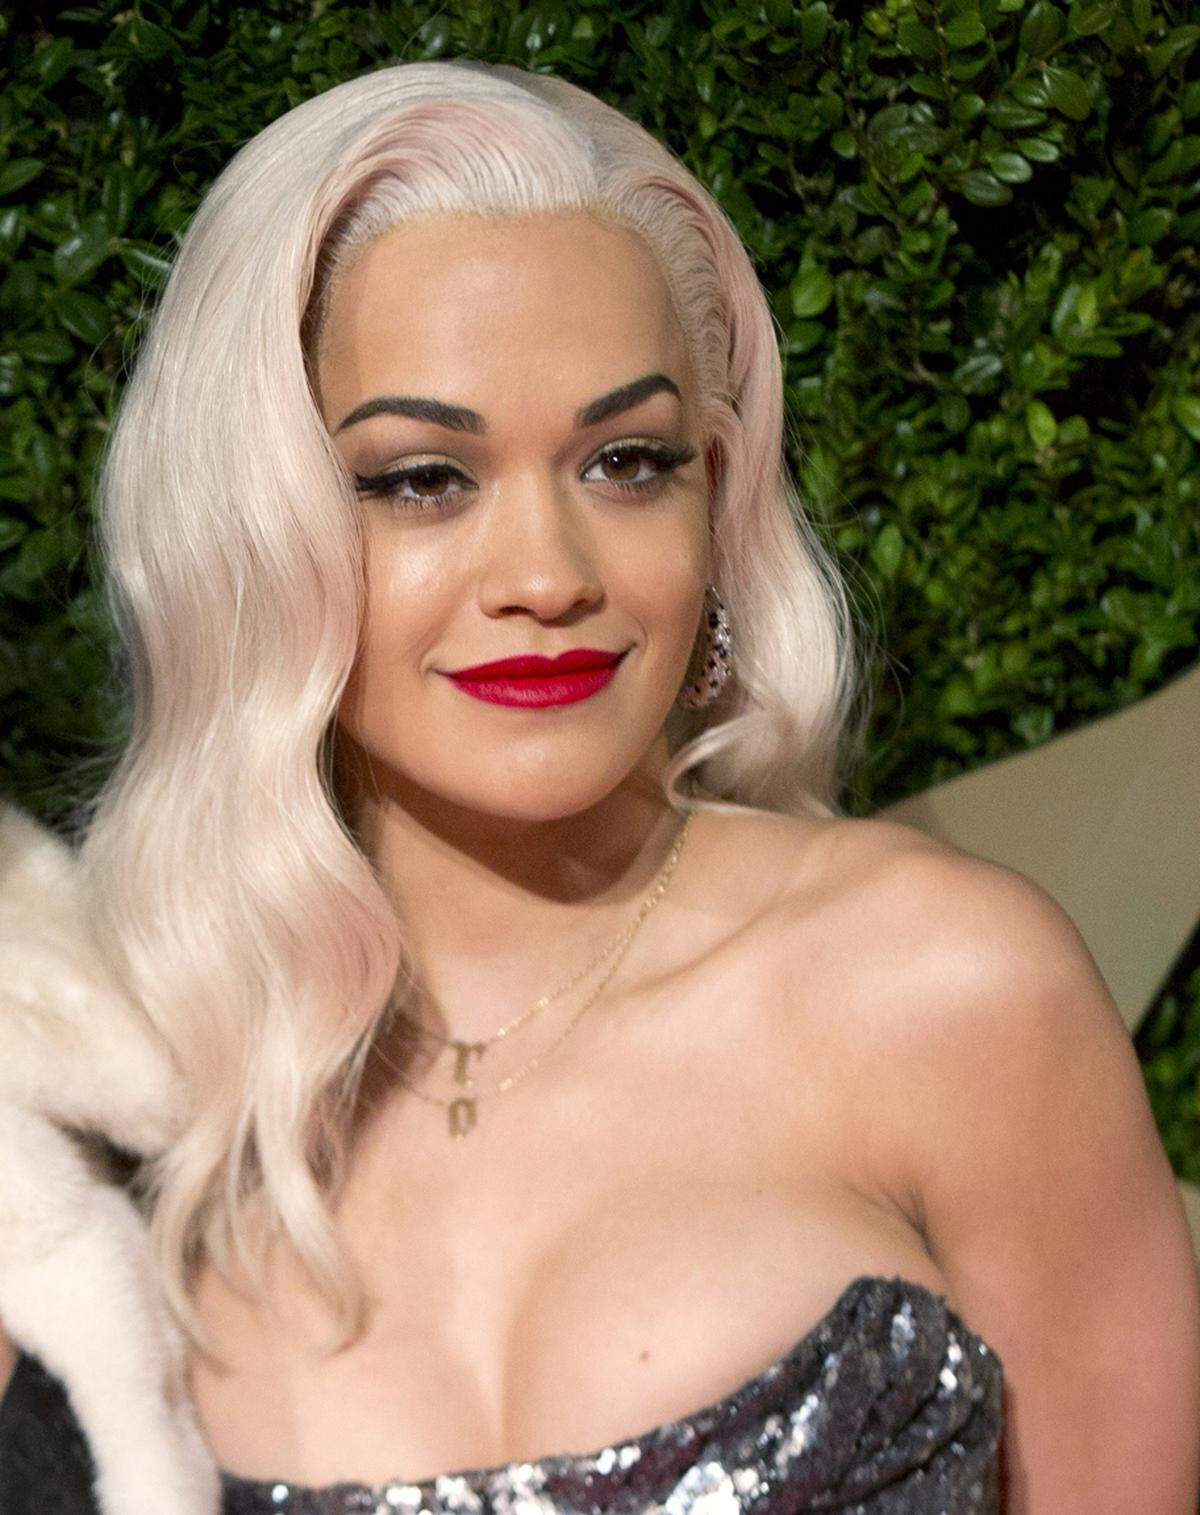 Sängerin Rita Ora experimentiert gerne mit ihren Haaren, eine weiße Mähne ist für sie kein Problem.